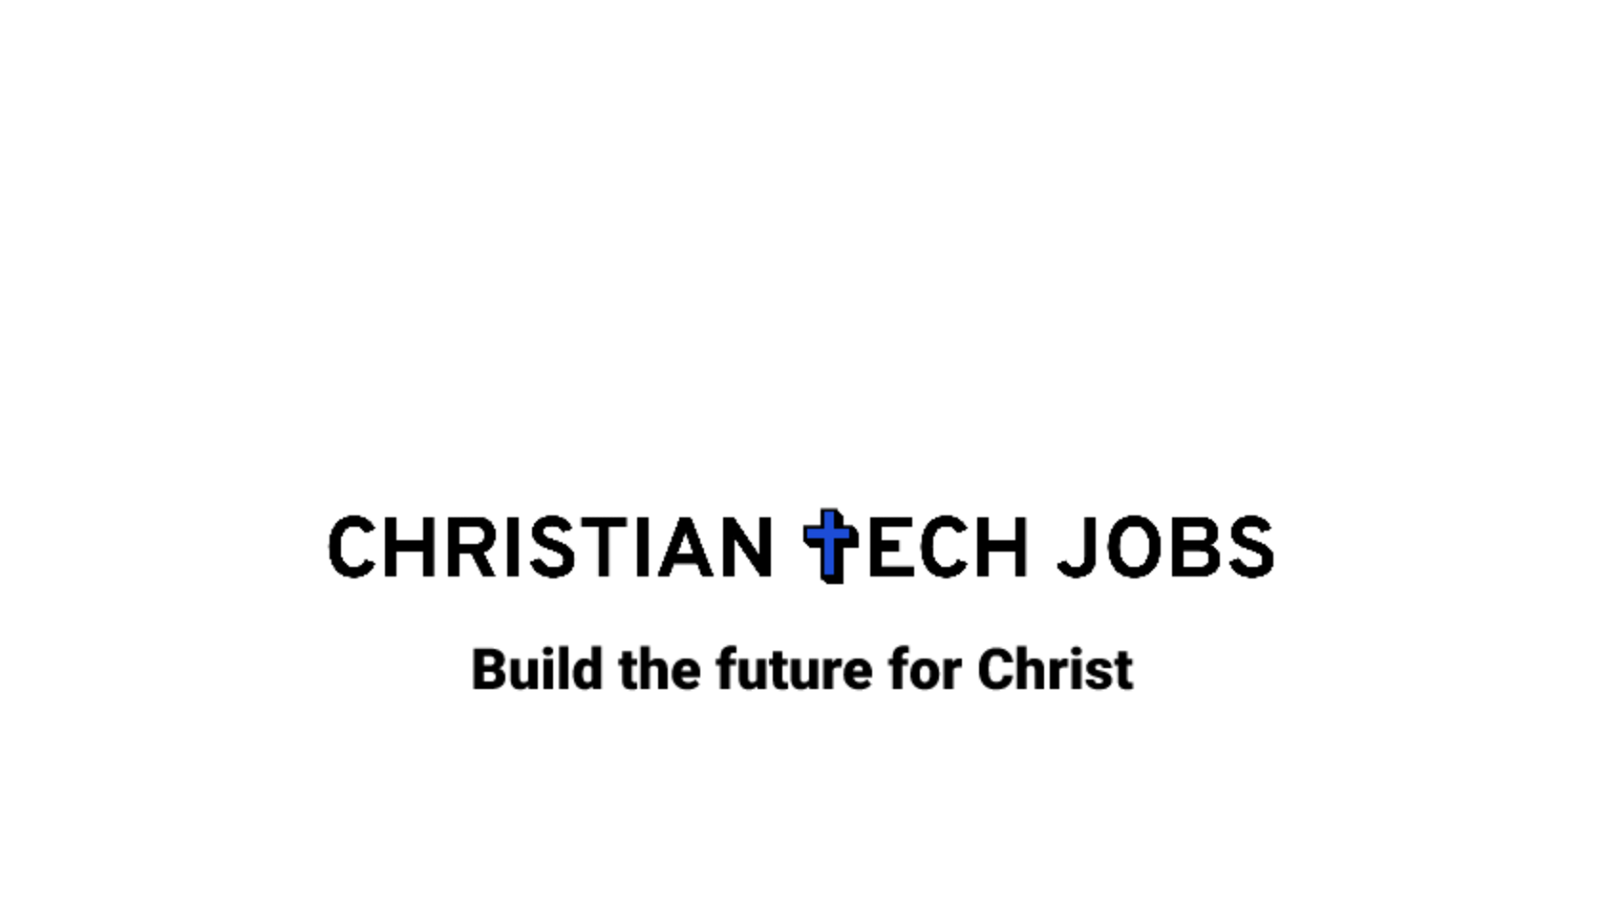 Christian Tech Jobs teaser